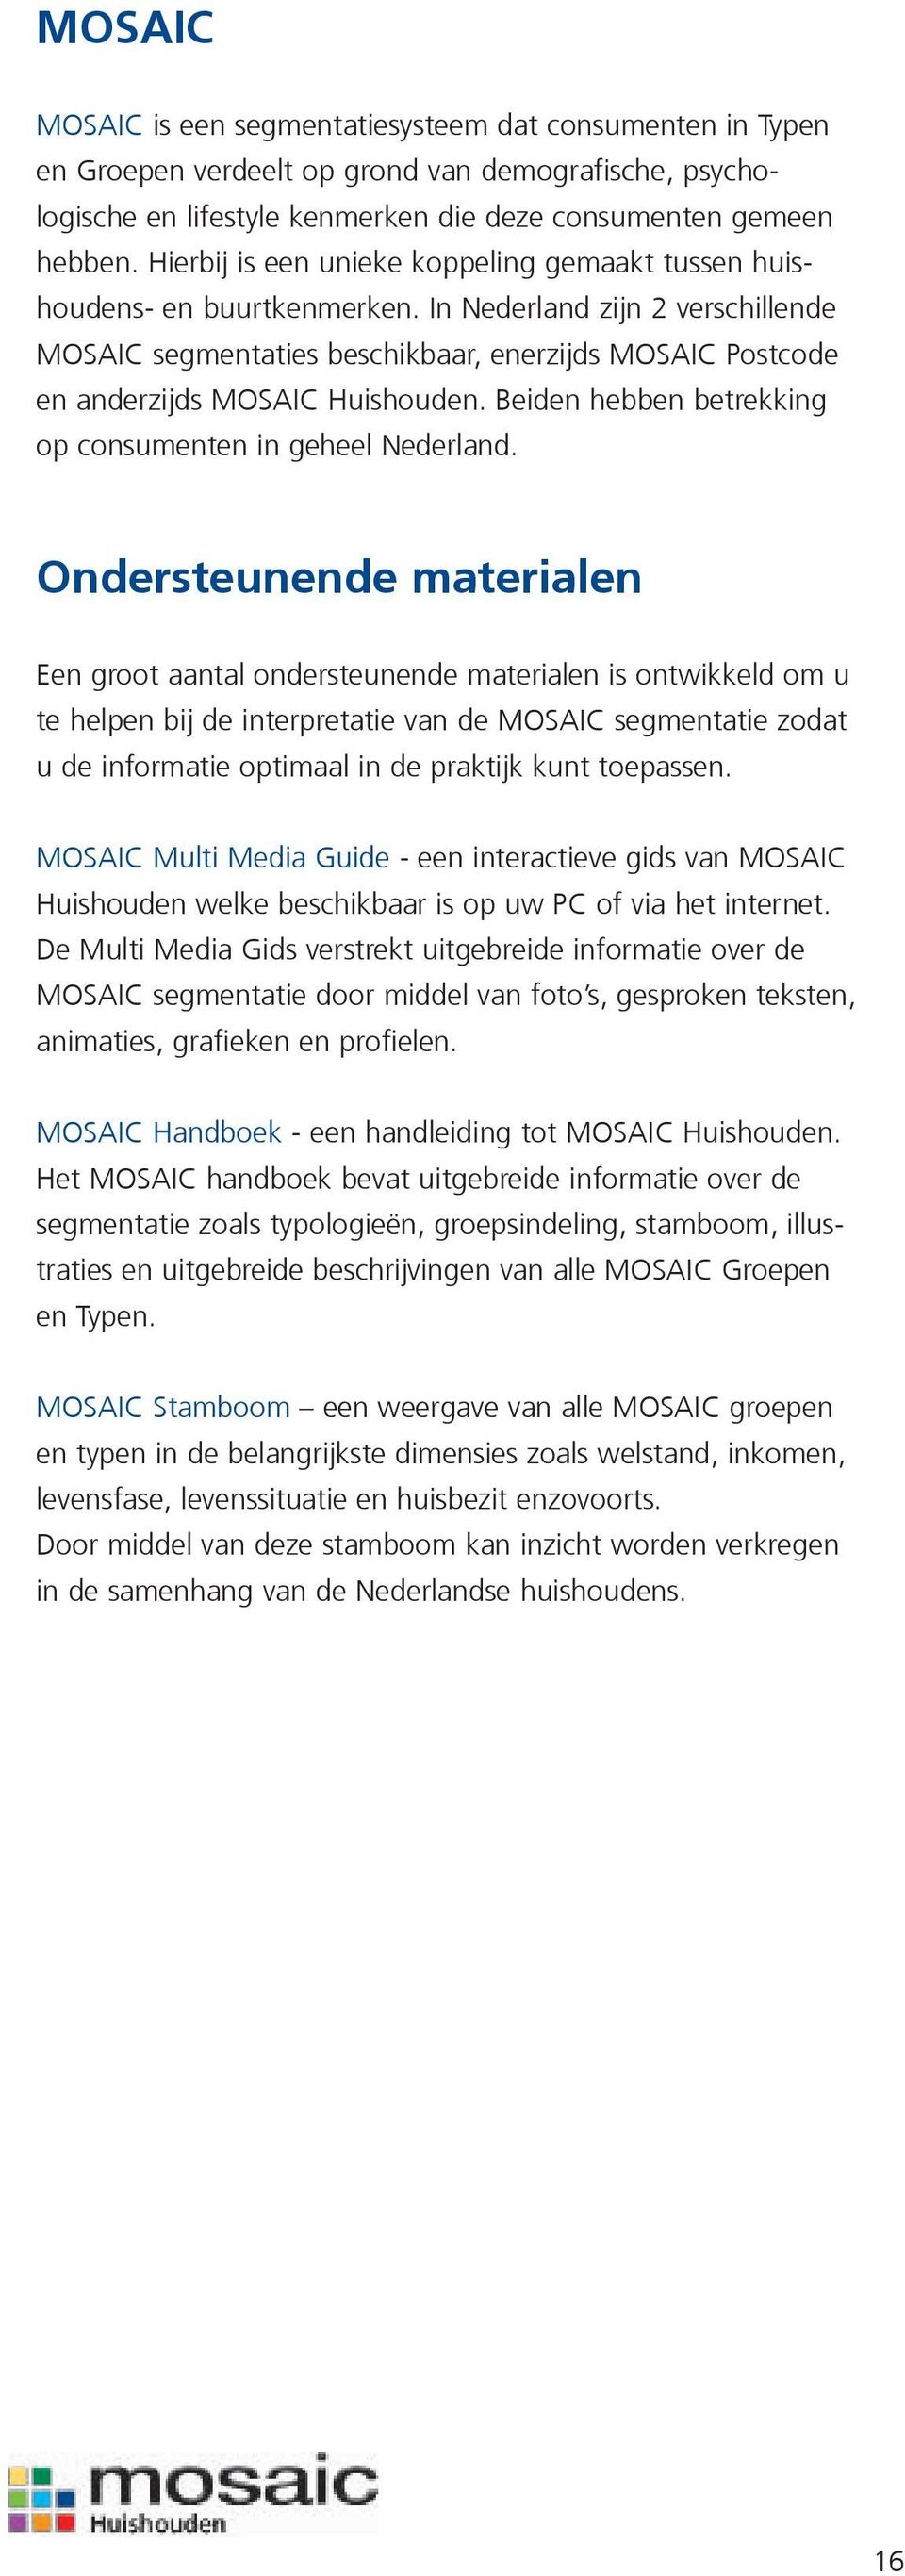 In Nederland zijn 2 verschillende MOSAIC segmentaties beschikbaar, enerzijds MOSAIC Postcode en anderzijds MOSAIC Huishouden. Beiden hebben betrekking op consumenten in geheel Nederland.